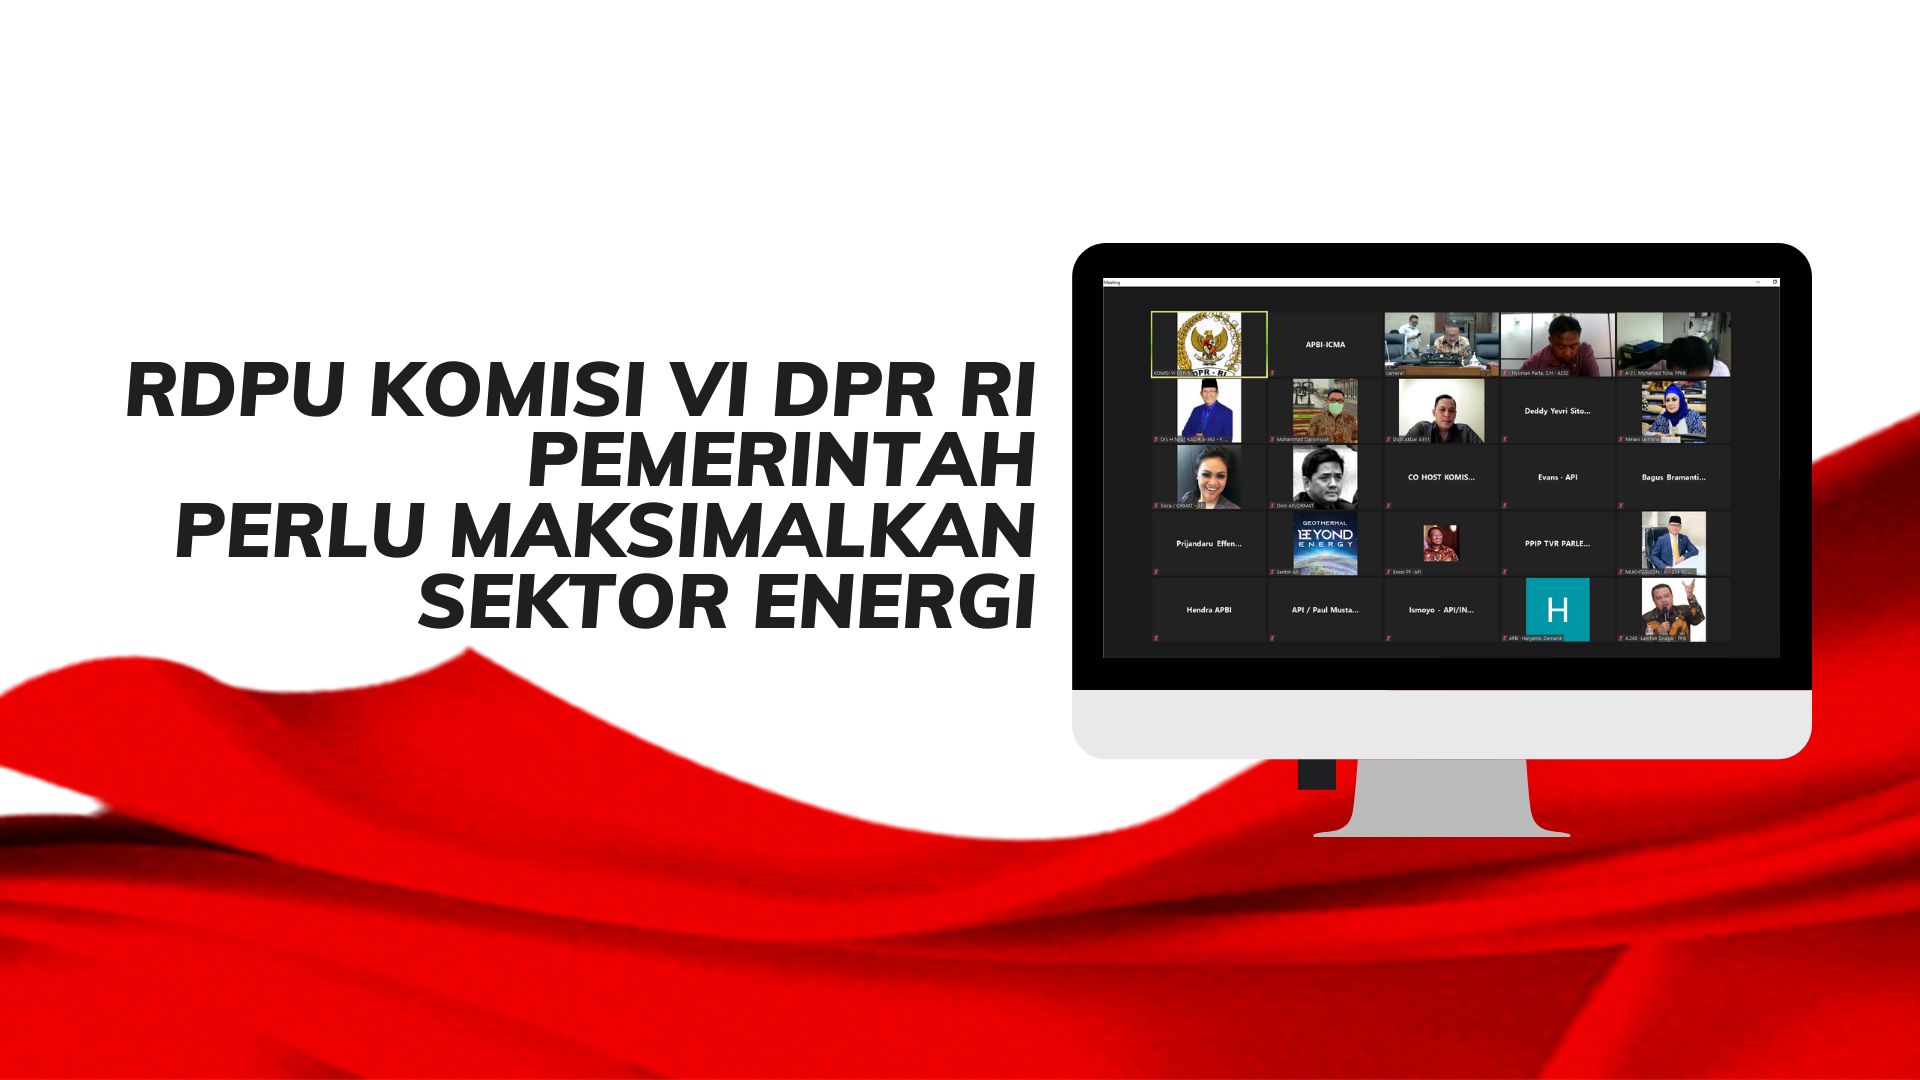 RDPU Komisi VI DPR RI - Pemerintah Perlu Maksimalkan Sektor Energi